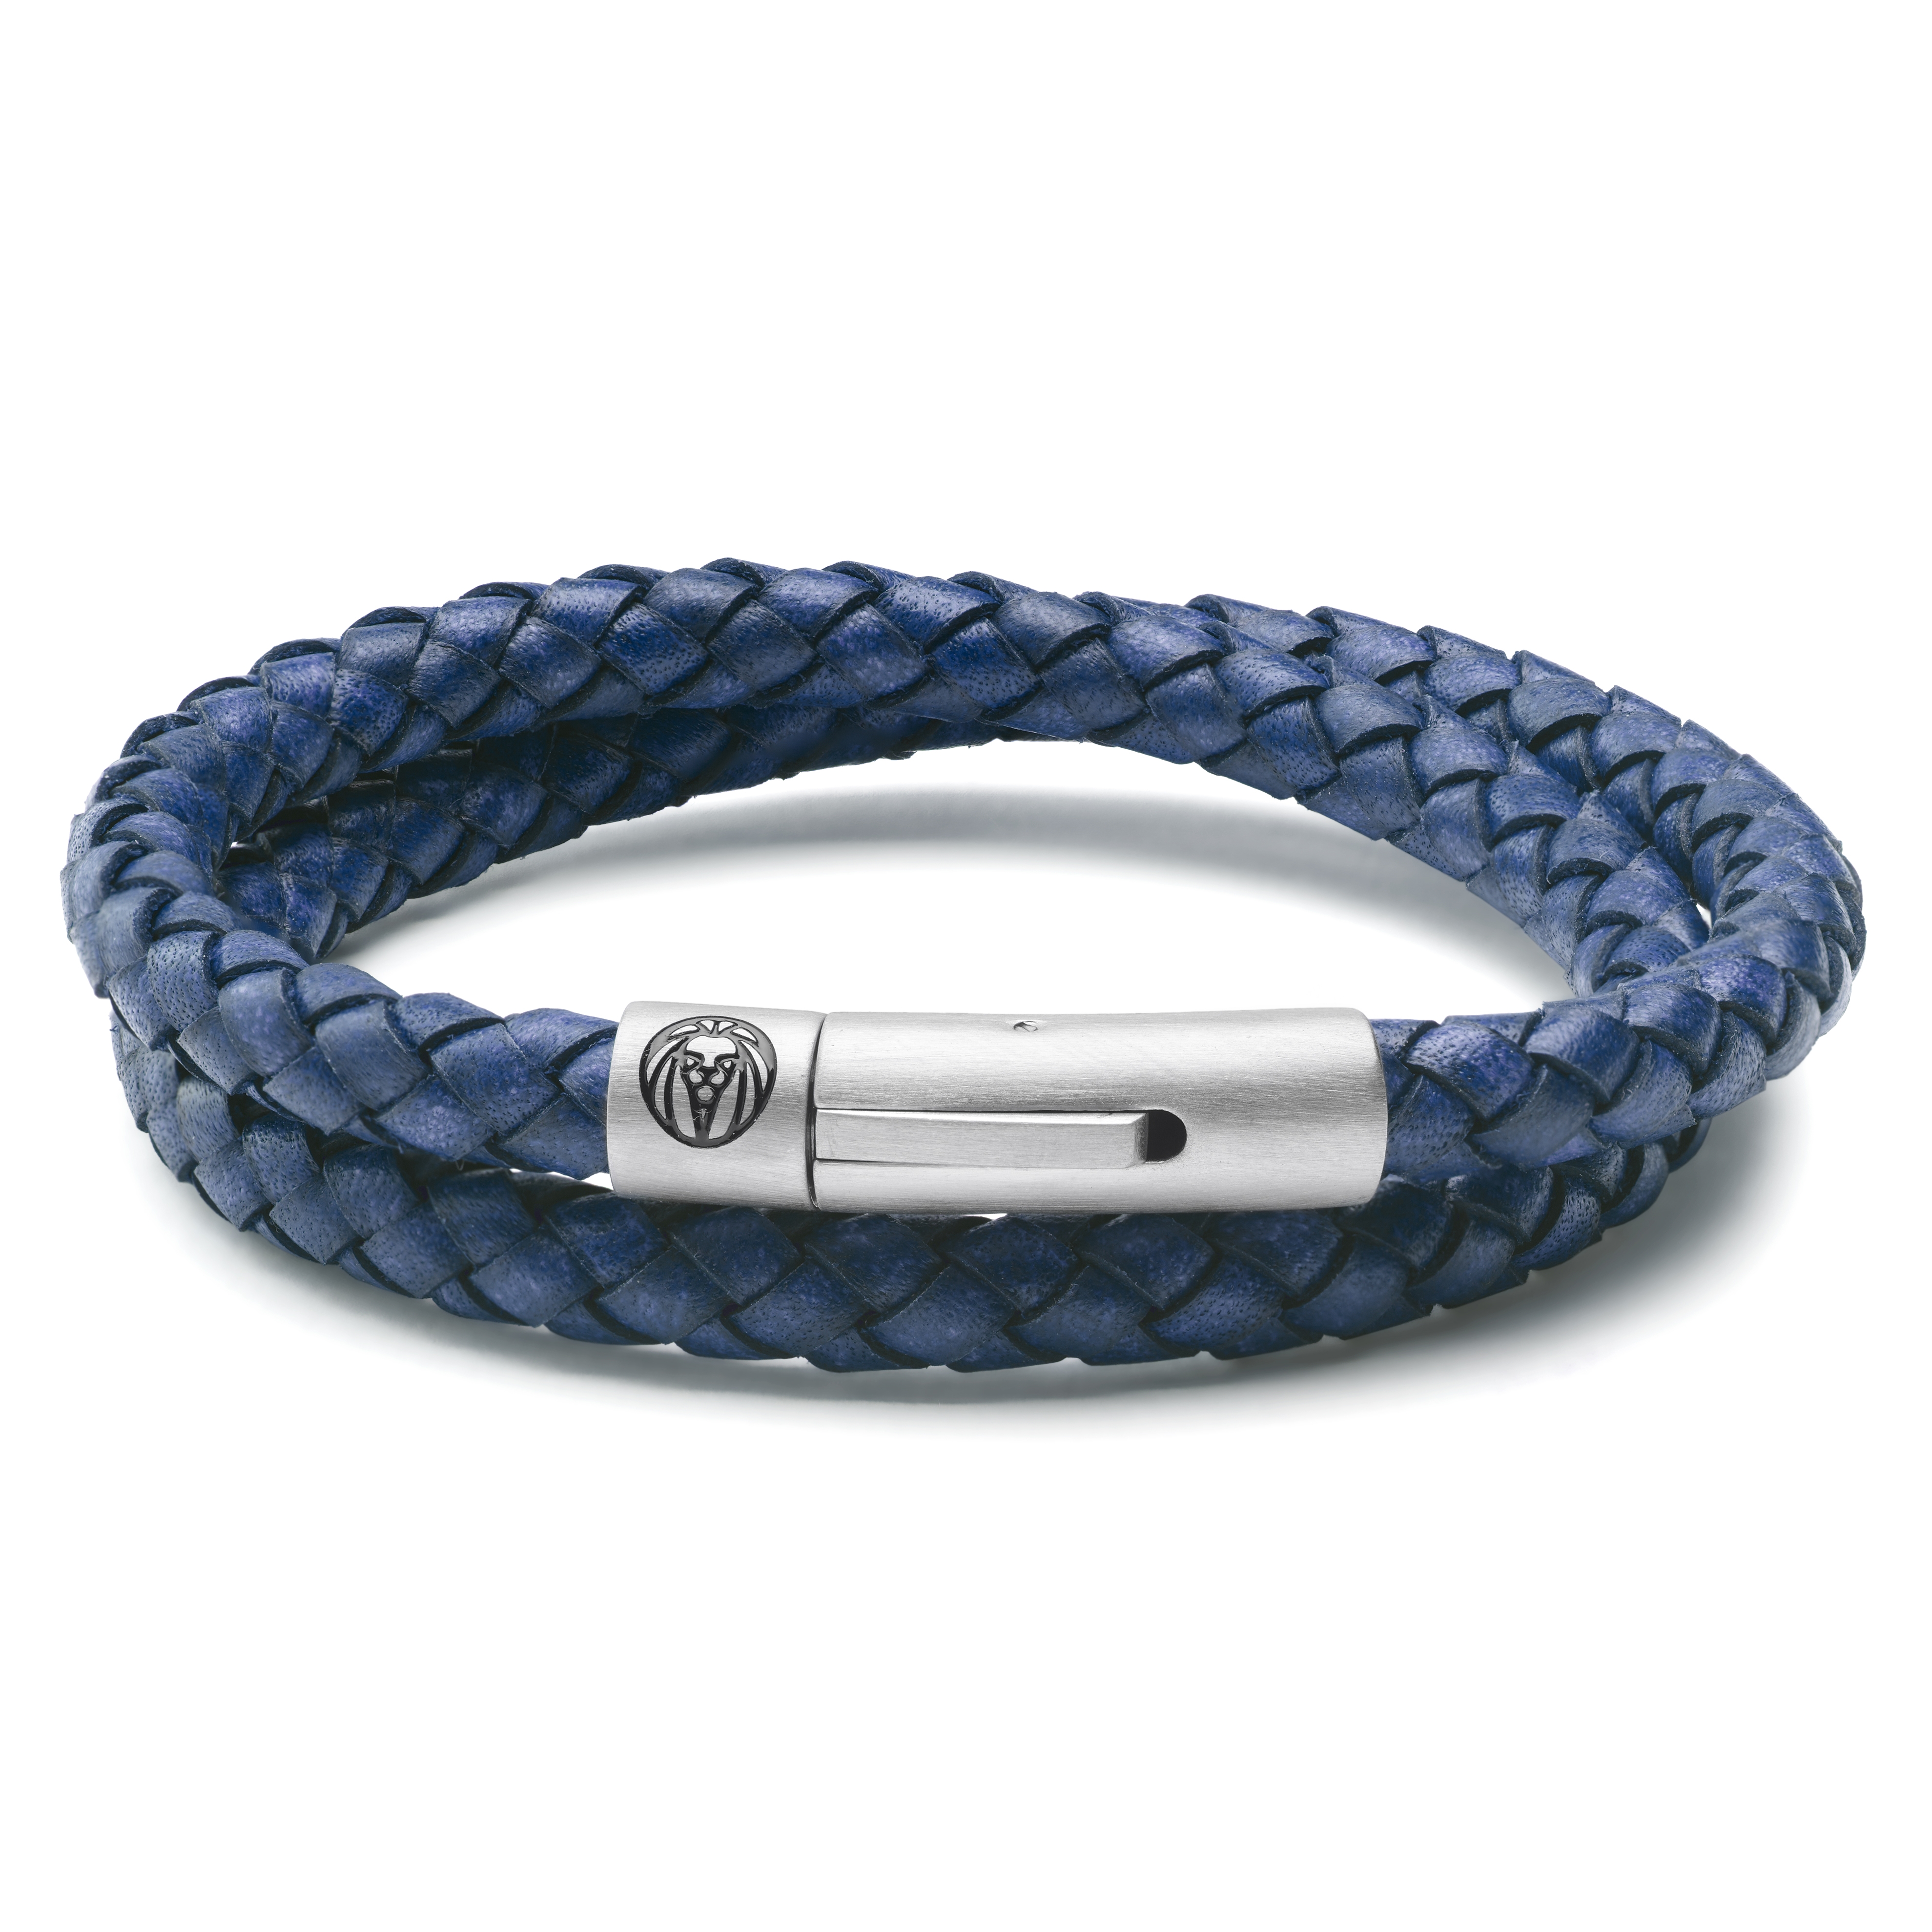 Blue flower stone leather bracelet | Unique leather bracelet, Leather  bracelet, Blue bracelet